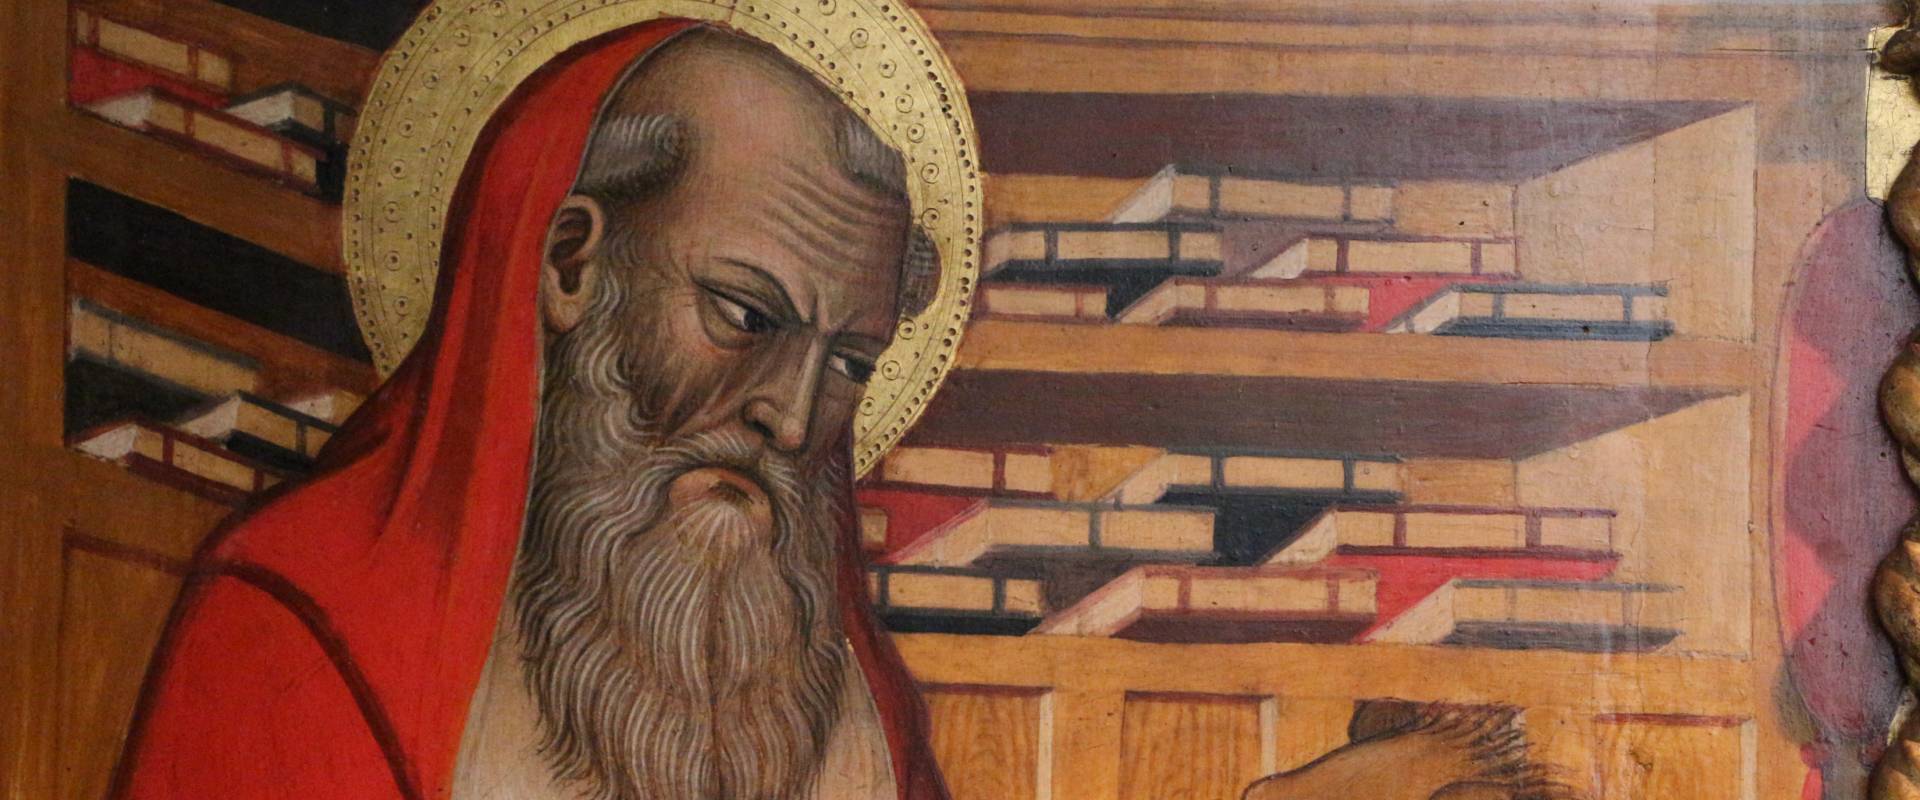 Pietro di giovanni lianori, polittico da s. girolamo di miramonte, 1453, 03 libri foto di Sailko